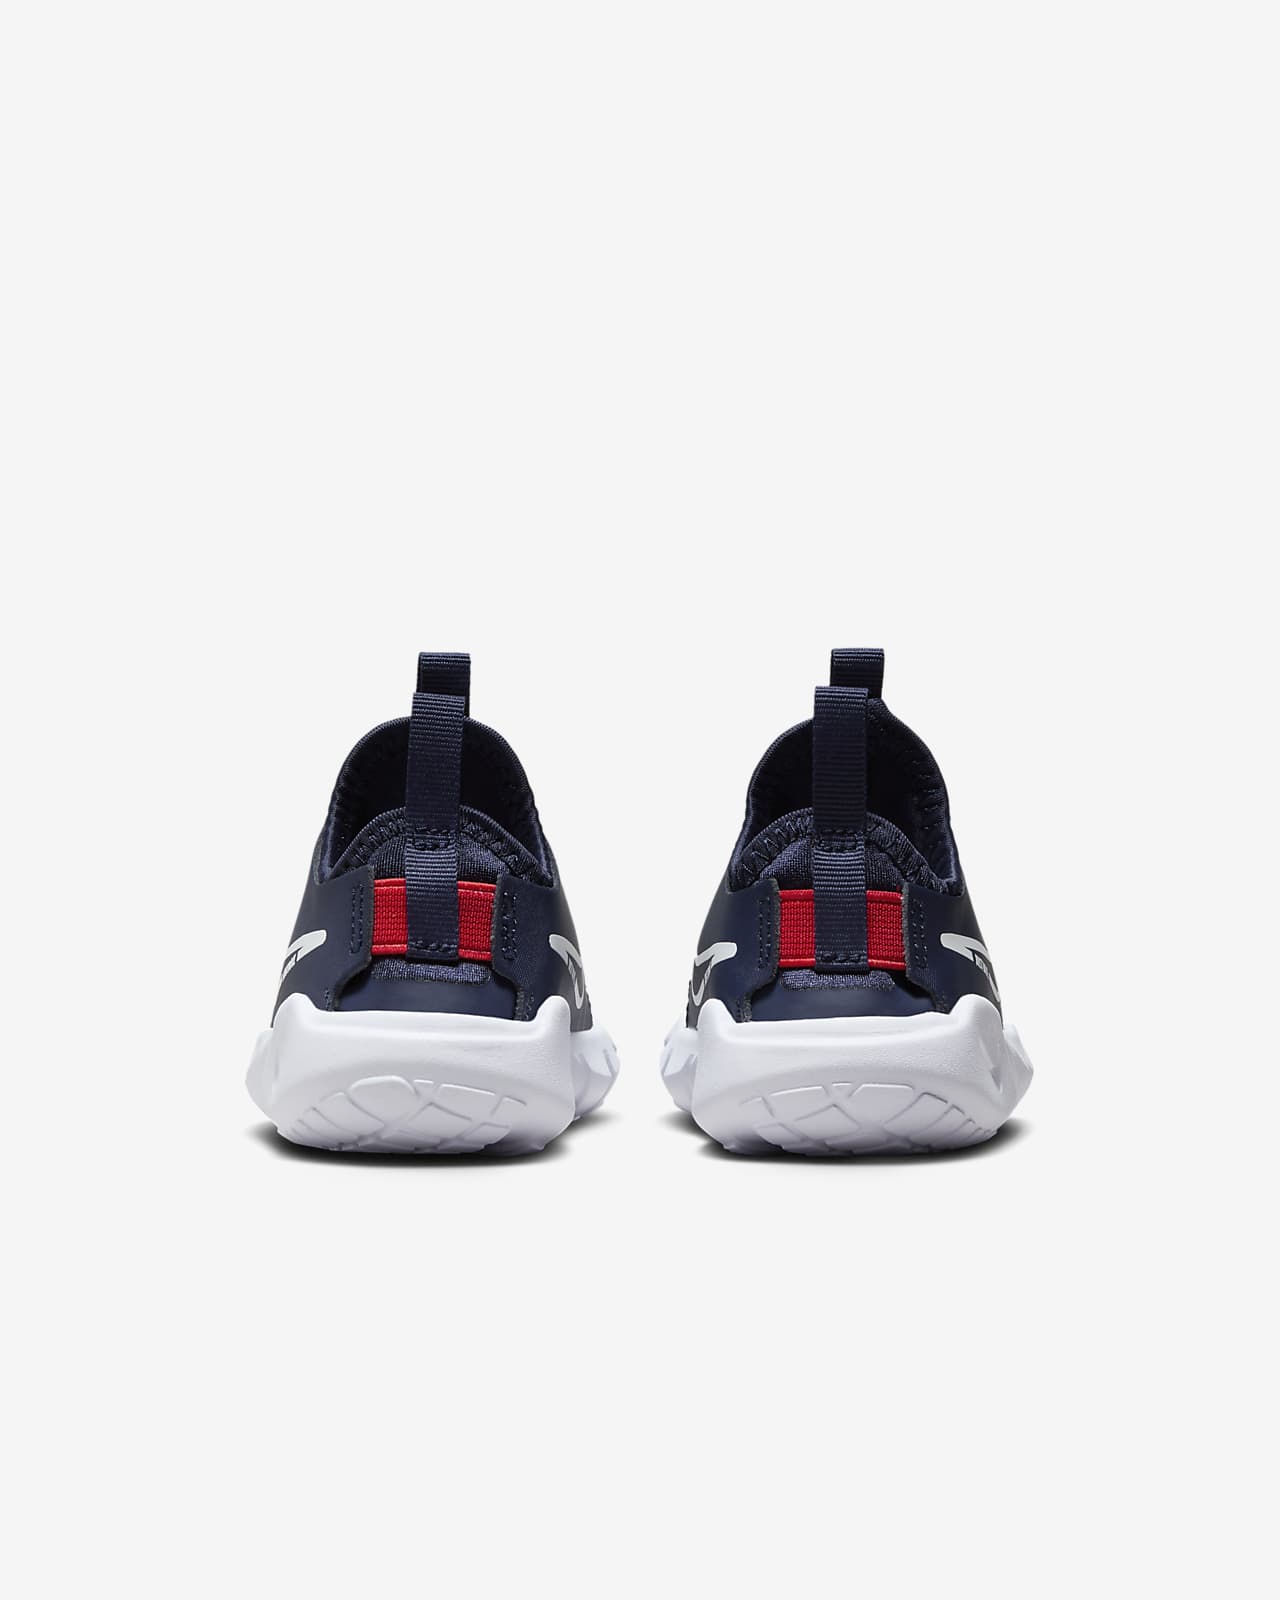 2 Baby/Toddler Nike Shoes. Runner Flex